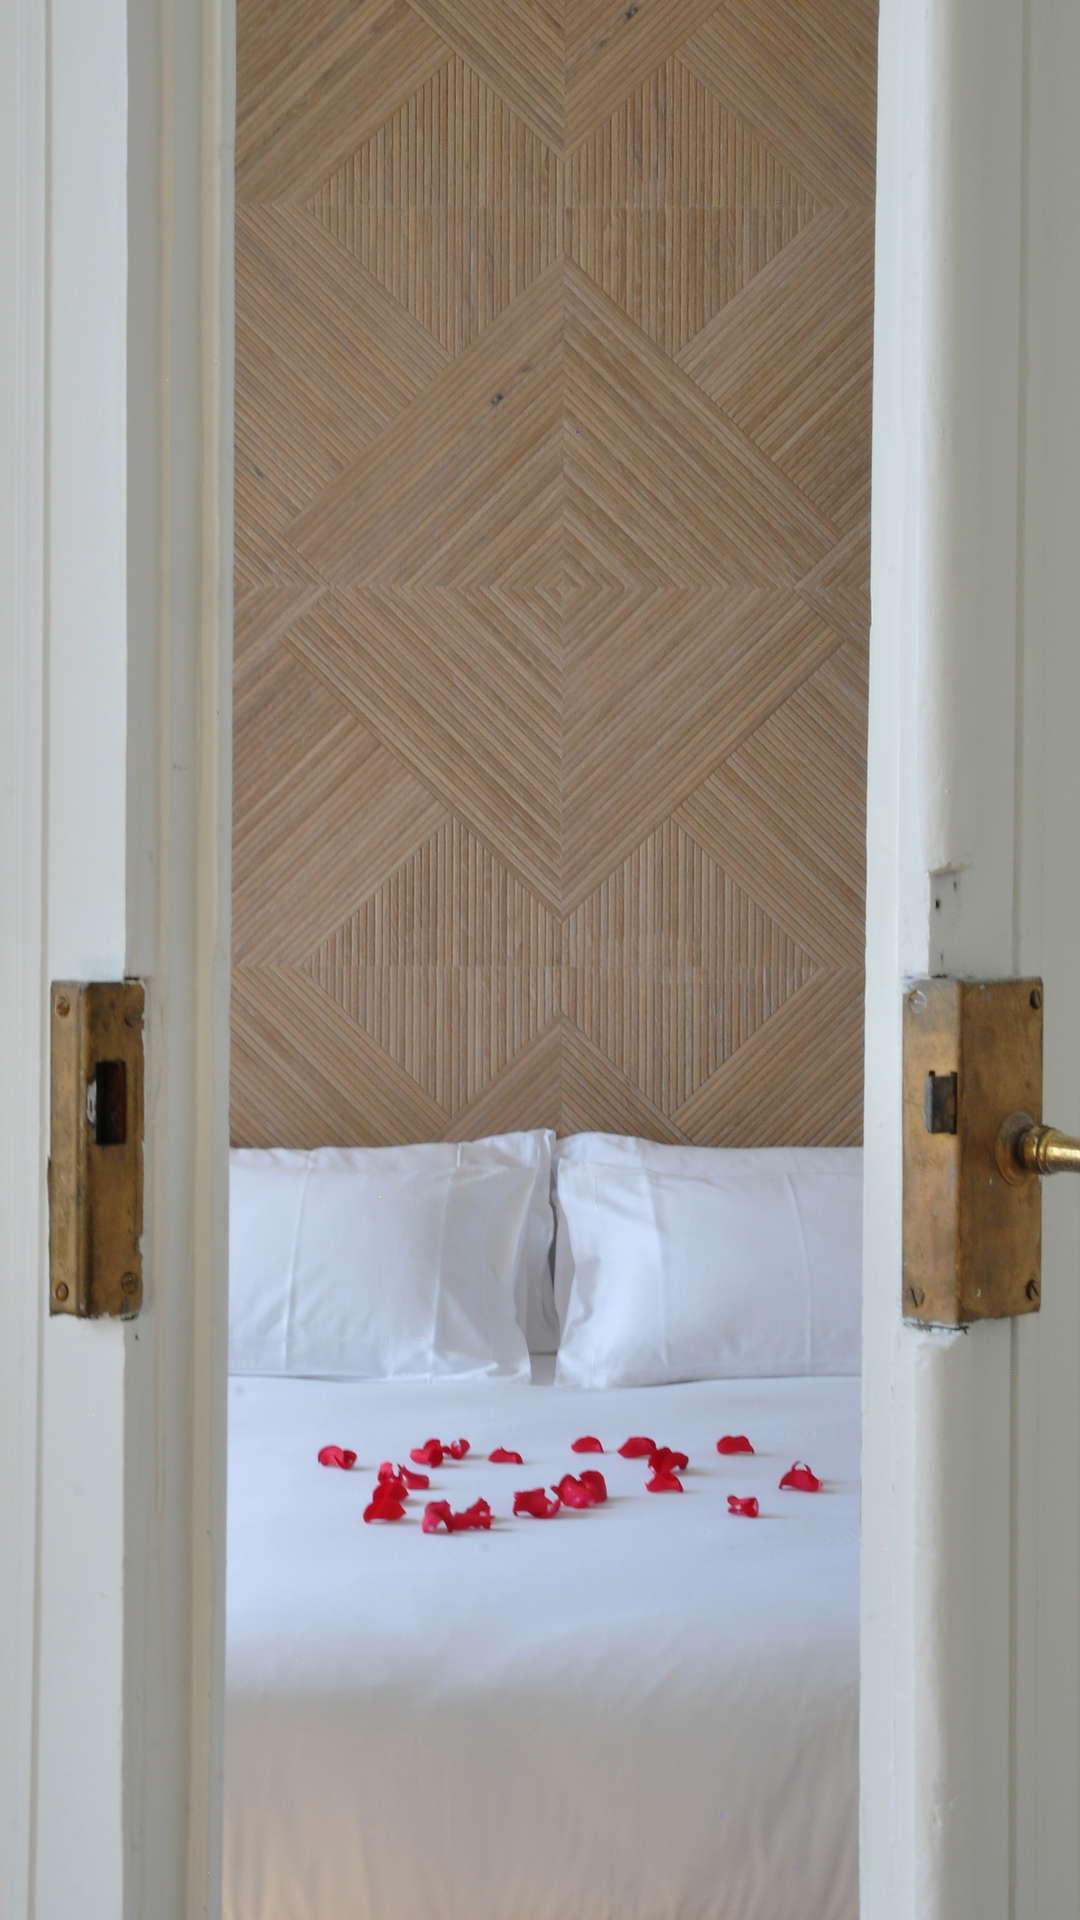 Pétale de rose sur le lit, appartement vacances sete, Les Clés Secrètes.